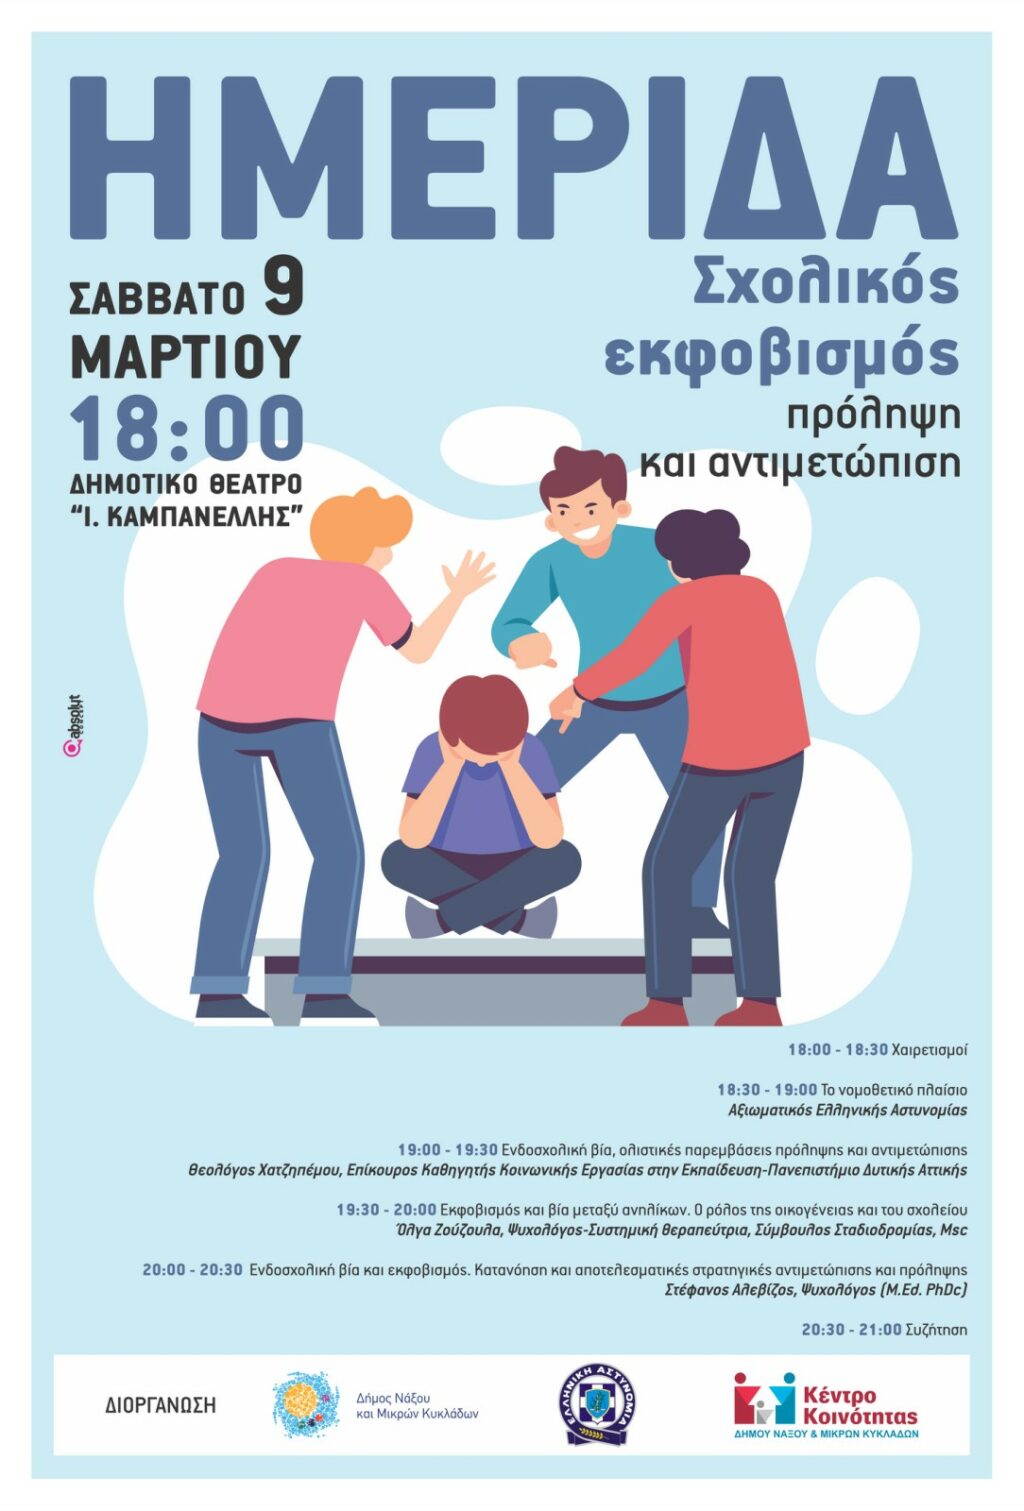 Δήμος Νάξου & Μικρών Κυκλάδων: Ενημερωτική εκδήλωση με θέμα «Σχολικός εκφοβισμός: πρόληψη και αντιμετώπιση»